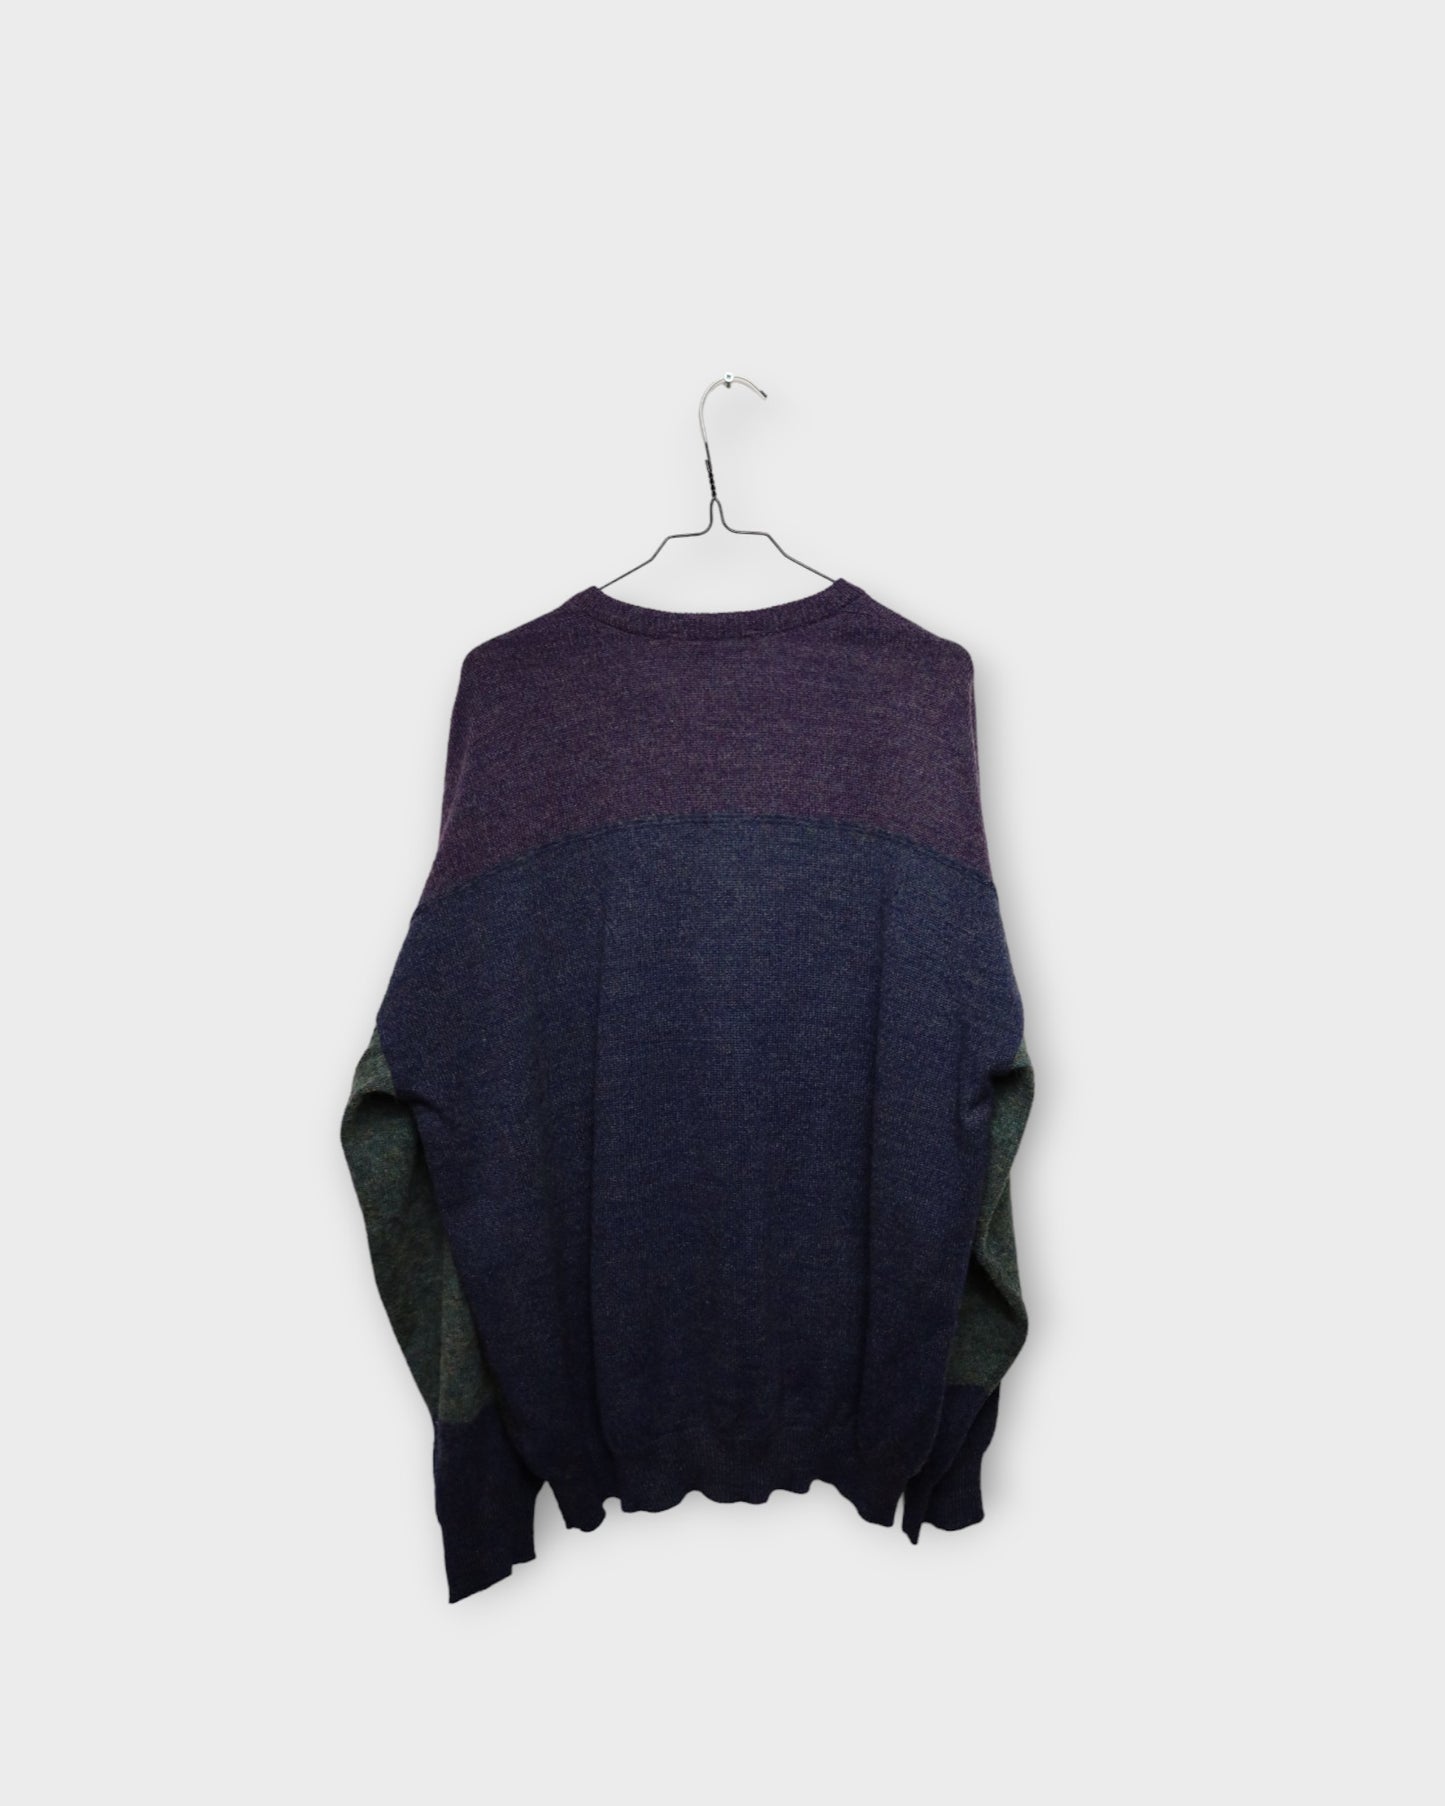 xap knitted sweater - XL/XXL